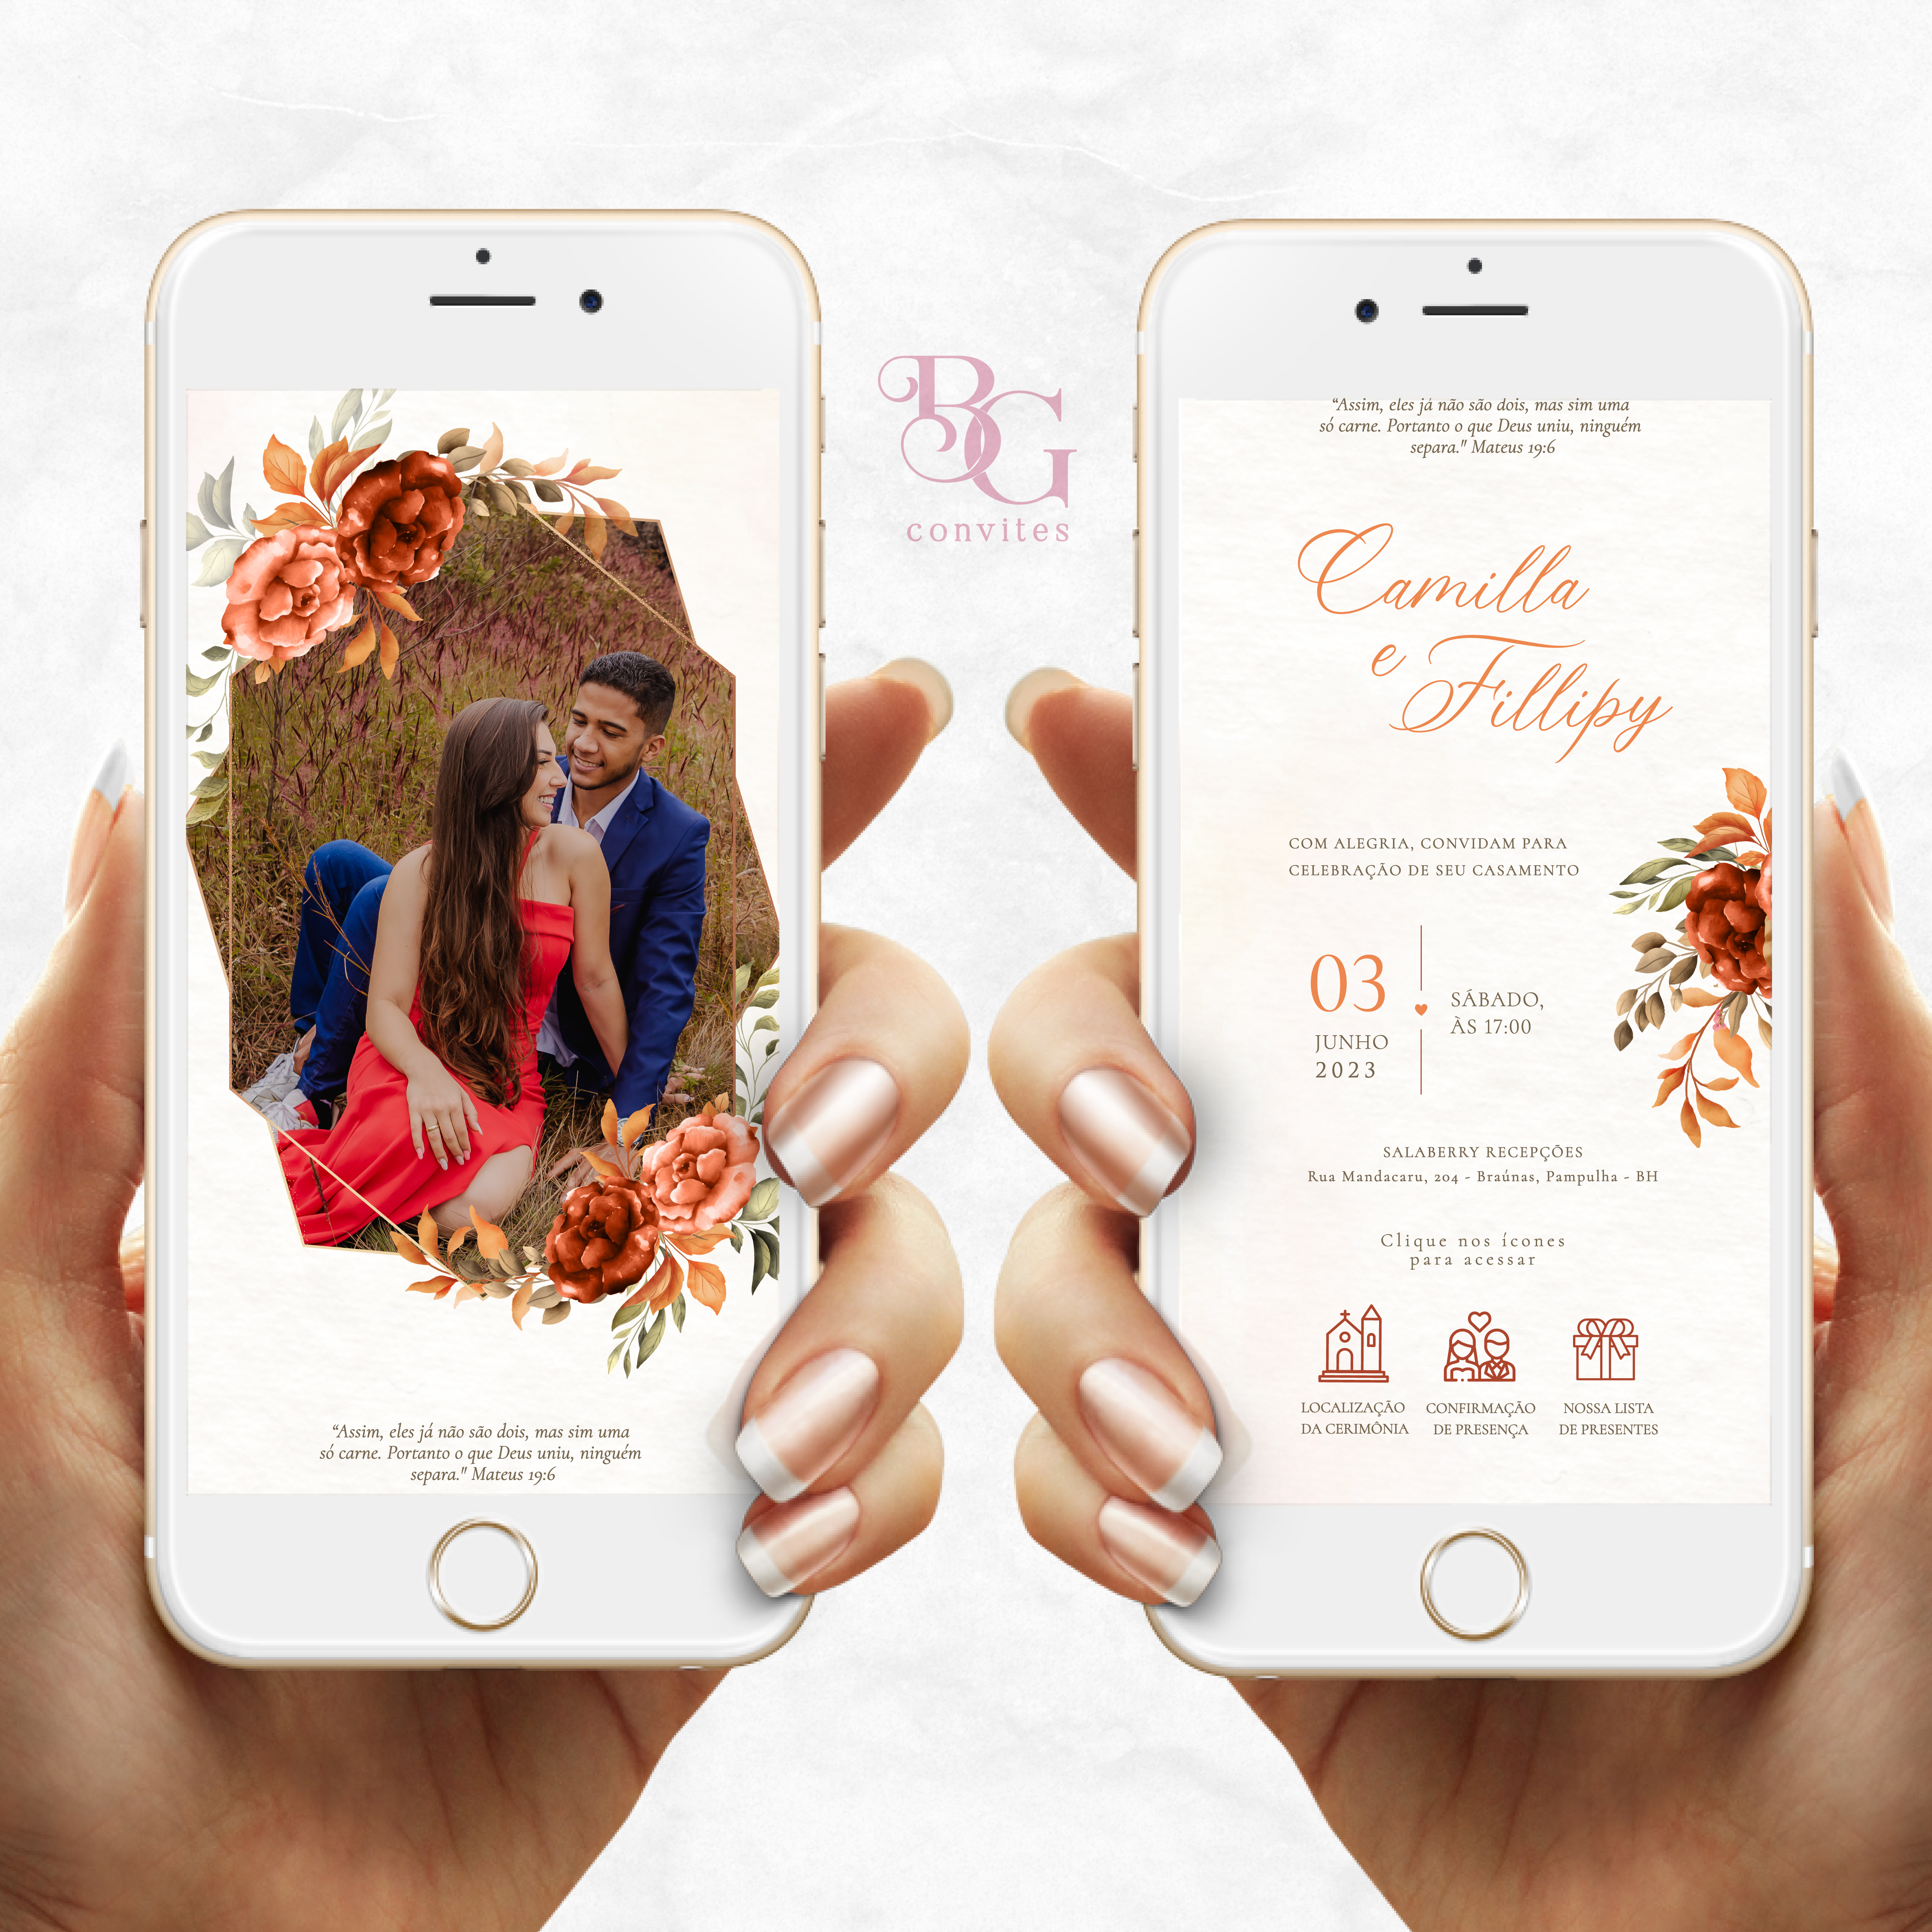 Convite Casamento Interativo Virtual Para Whatsapp